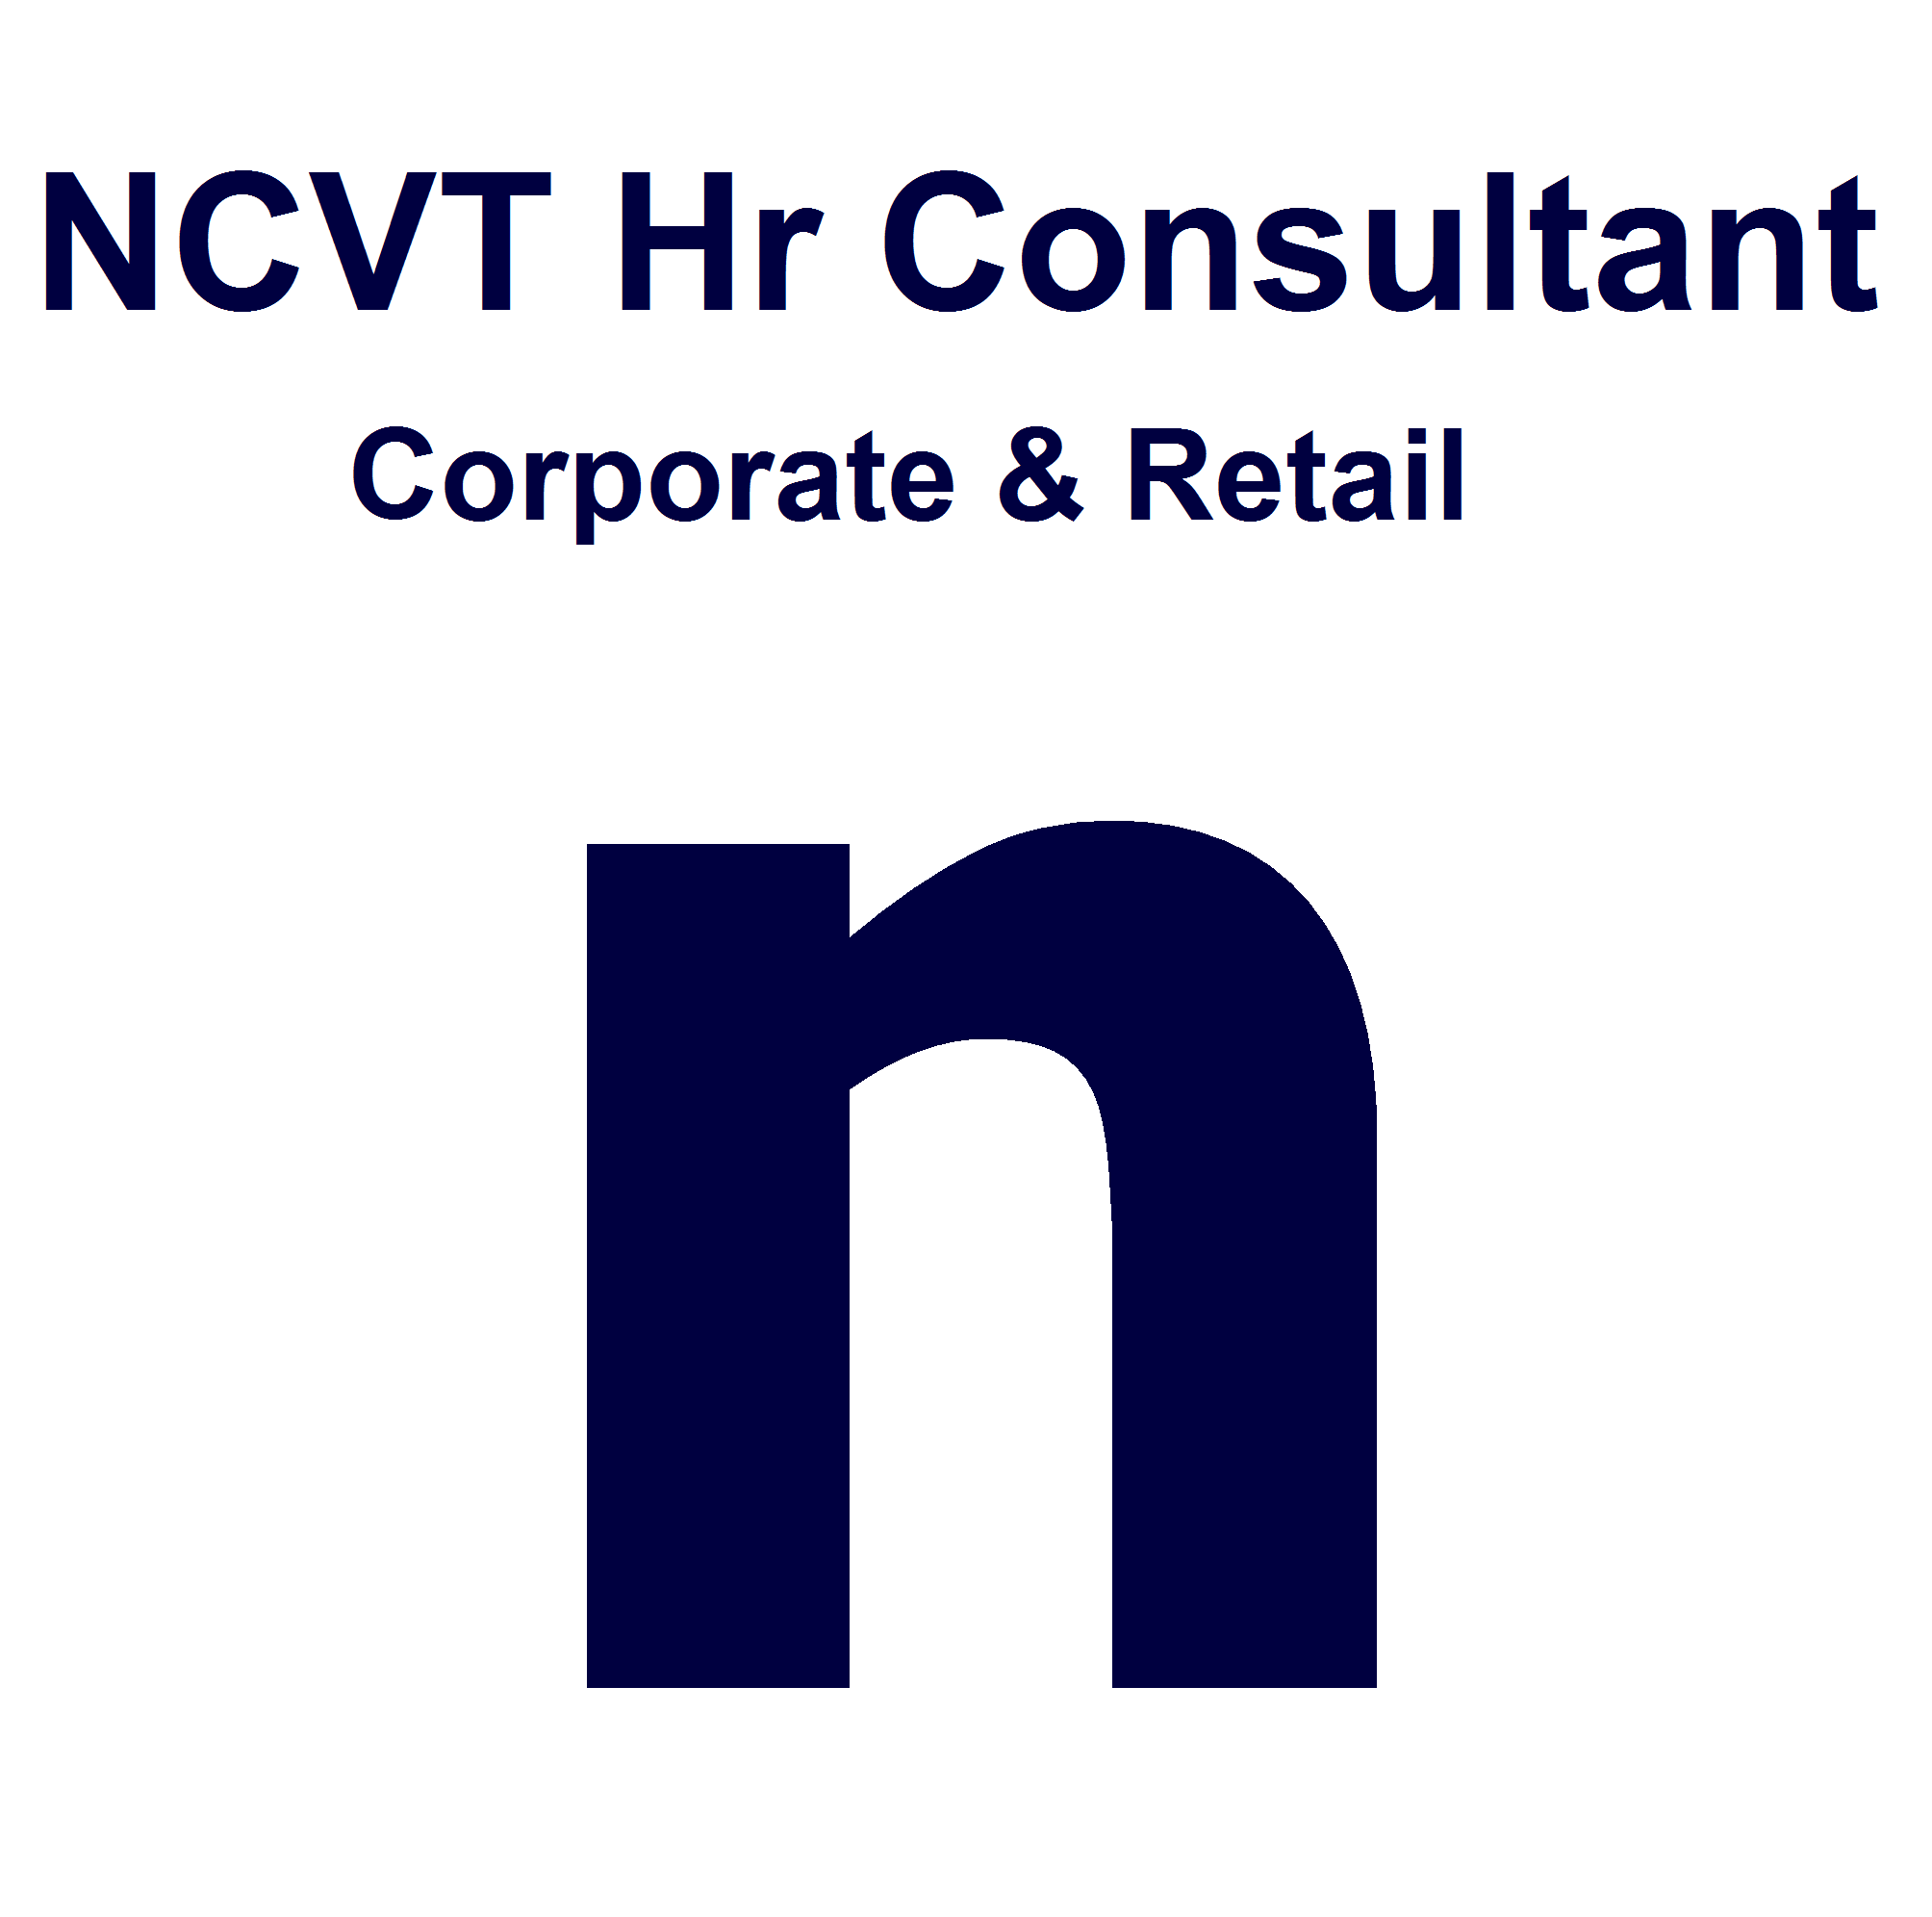 NCVT HR Consultant